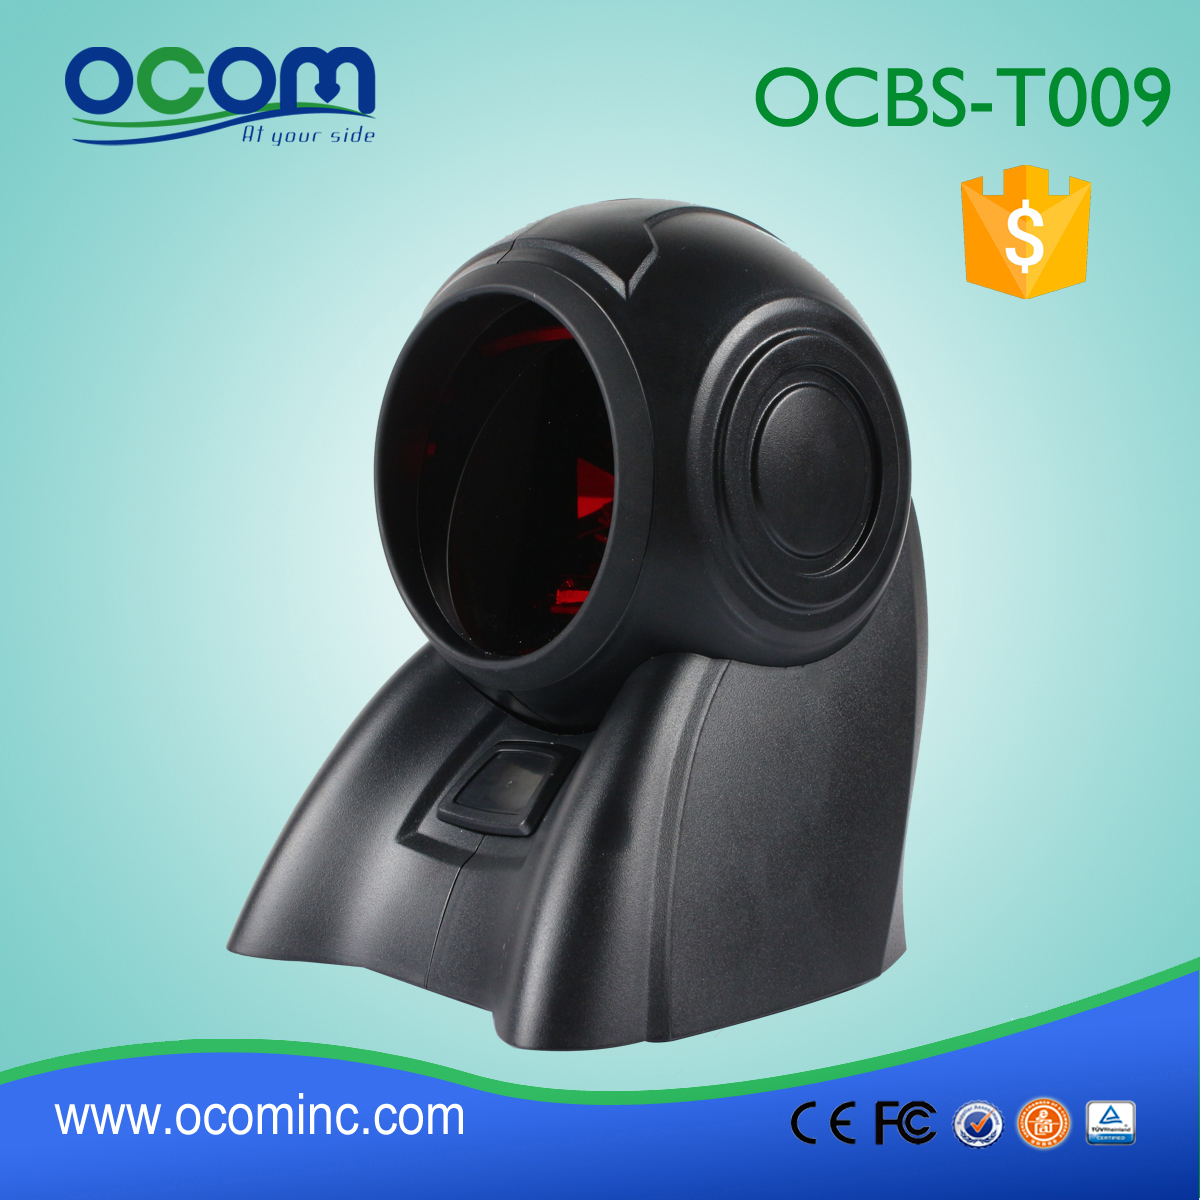 (OCBS -T009) Klassieke Omni Directional 1D-laserstreepjescodescanner